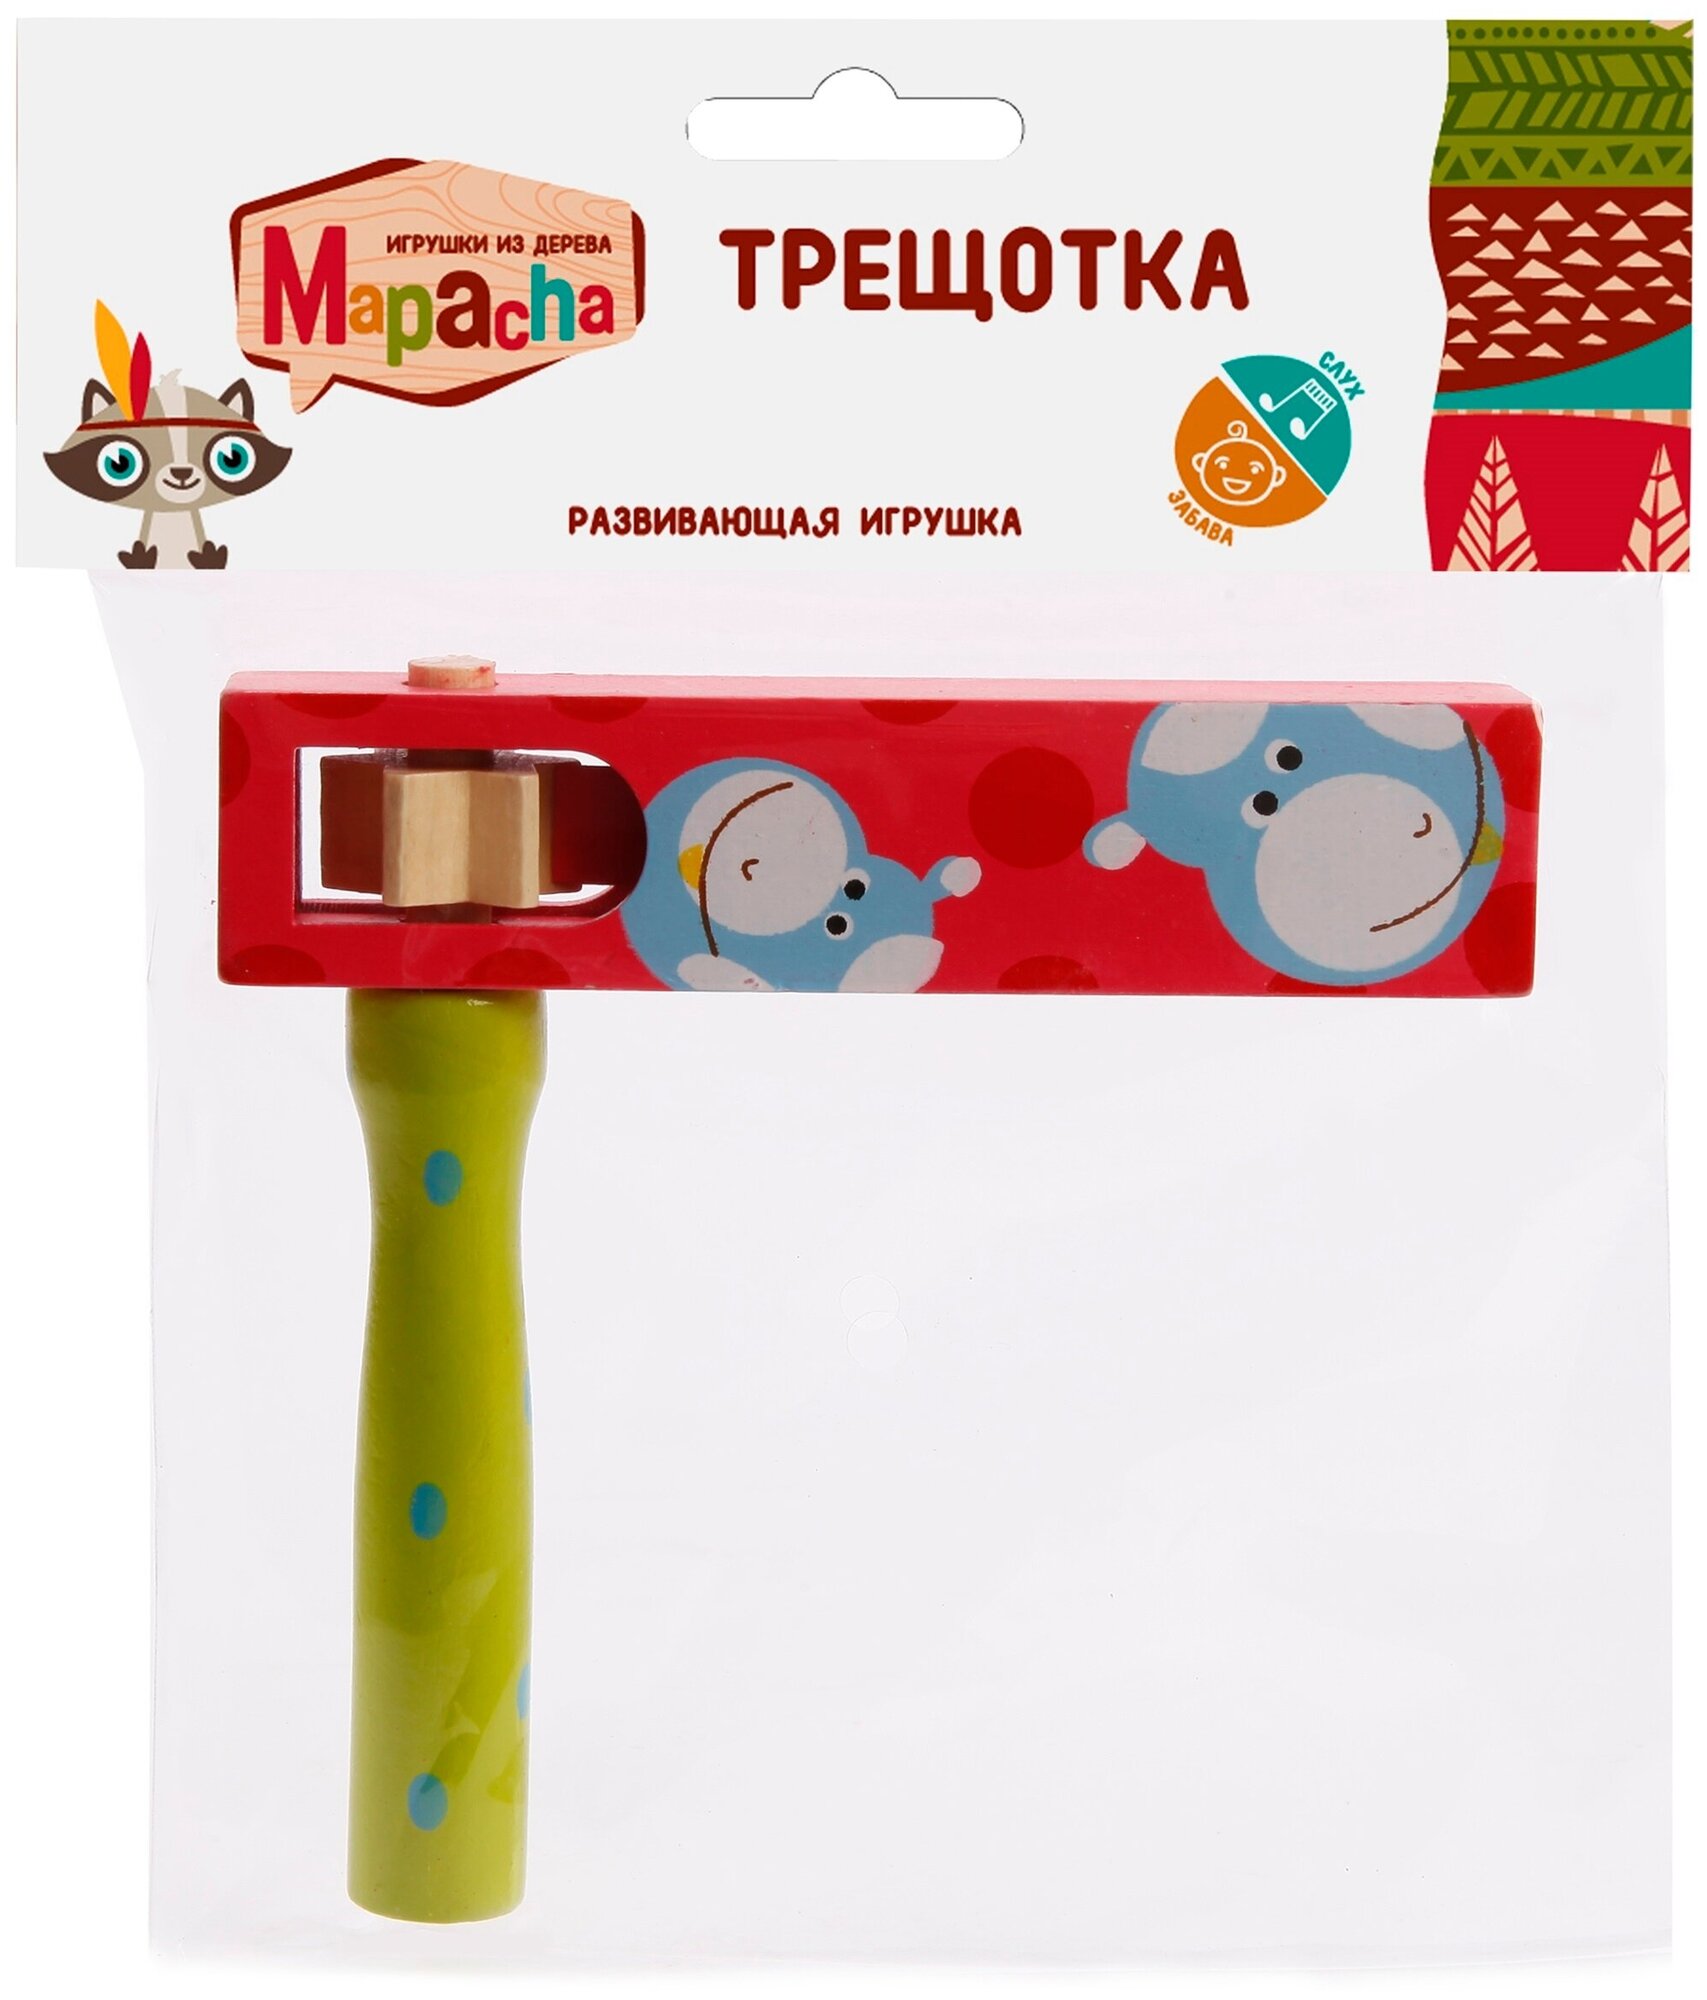 Игрушка из дерева Mapacha, Трещотка круговая красный/зеленый - фото №4